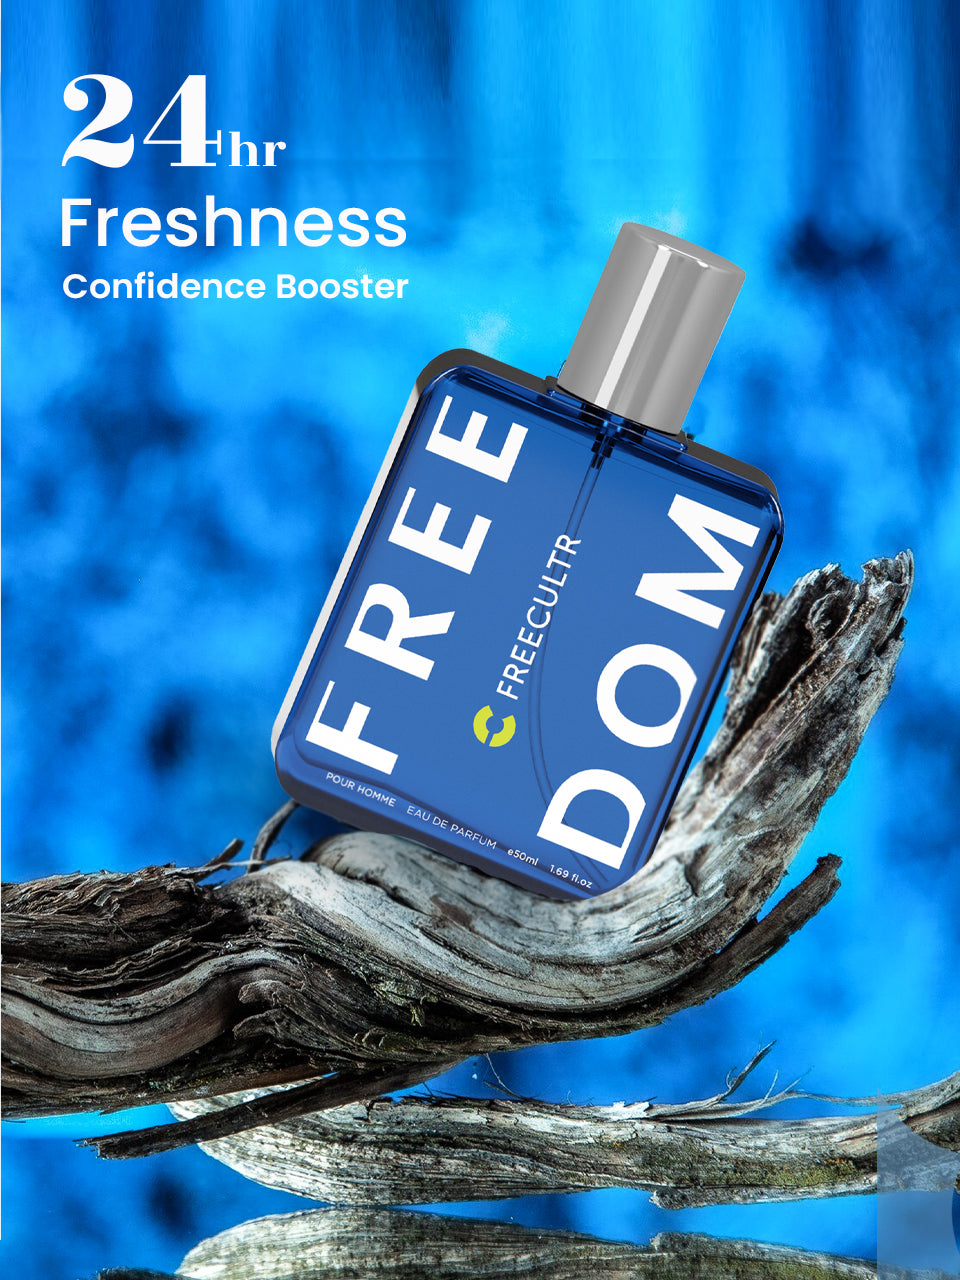 EDP Perfume for Men - Freedom & DemiGod - 50 ml Pack of 2